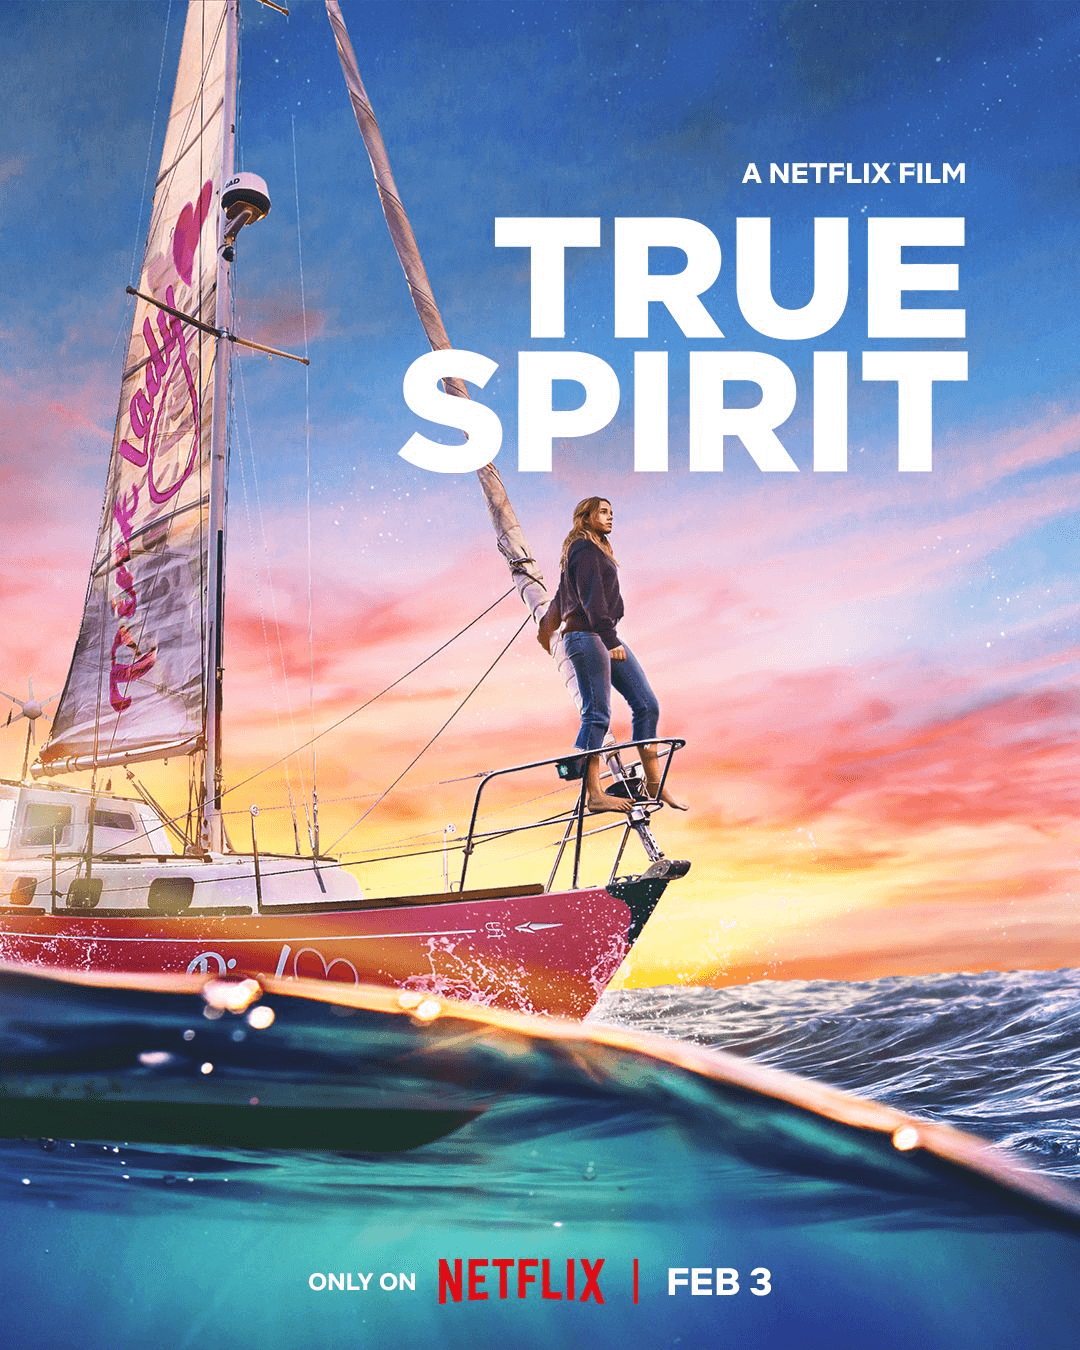 True Spirit Poster Netflix Film se estrenará en Netflix en febrero de 2023